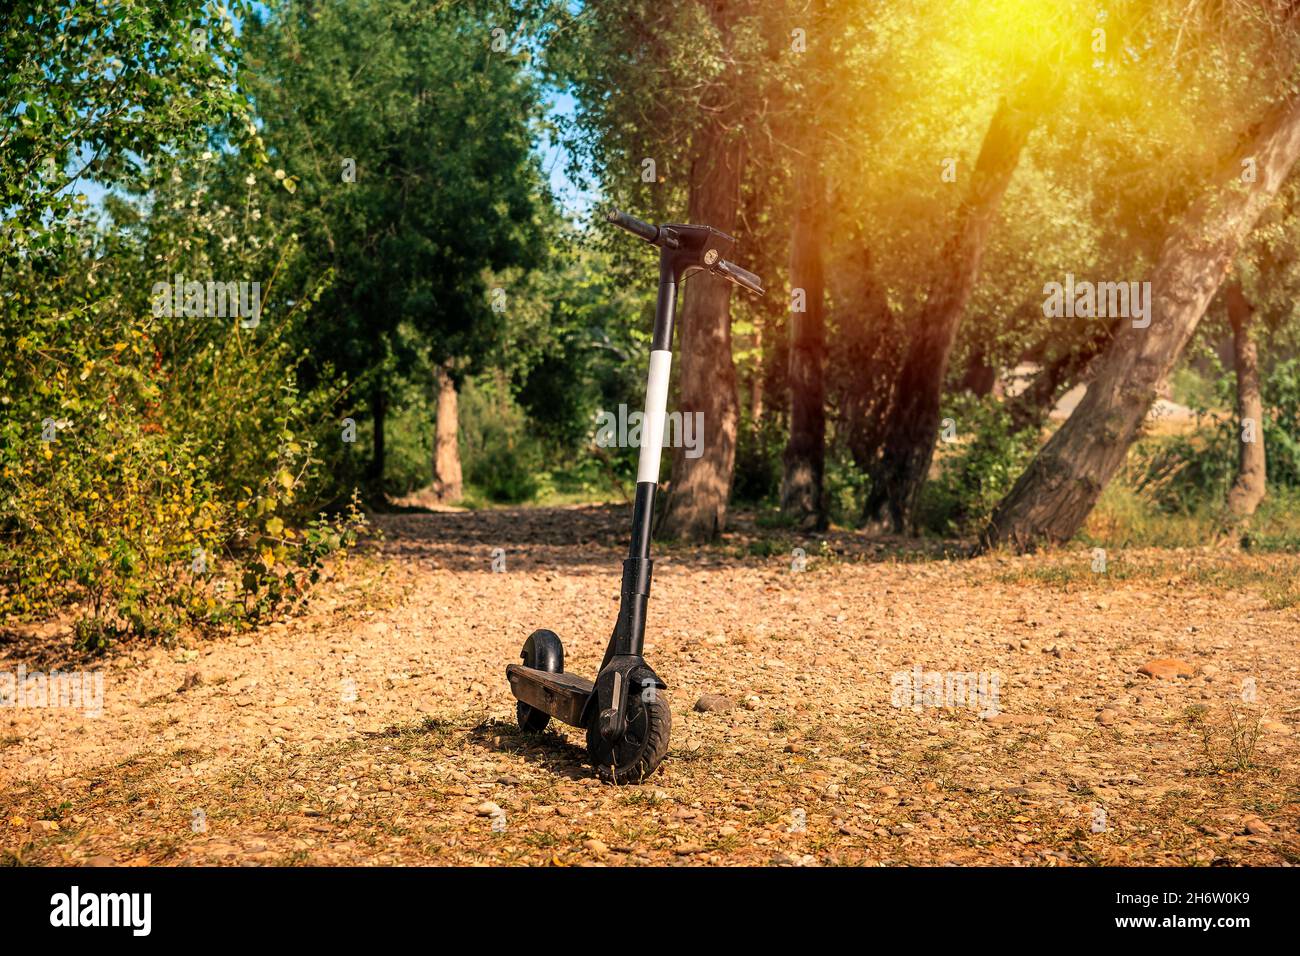 un scooter électrique dans la nature Banque D'Images